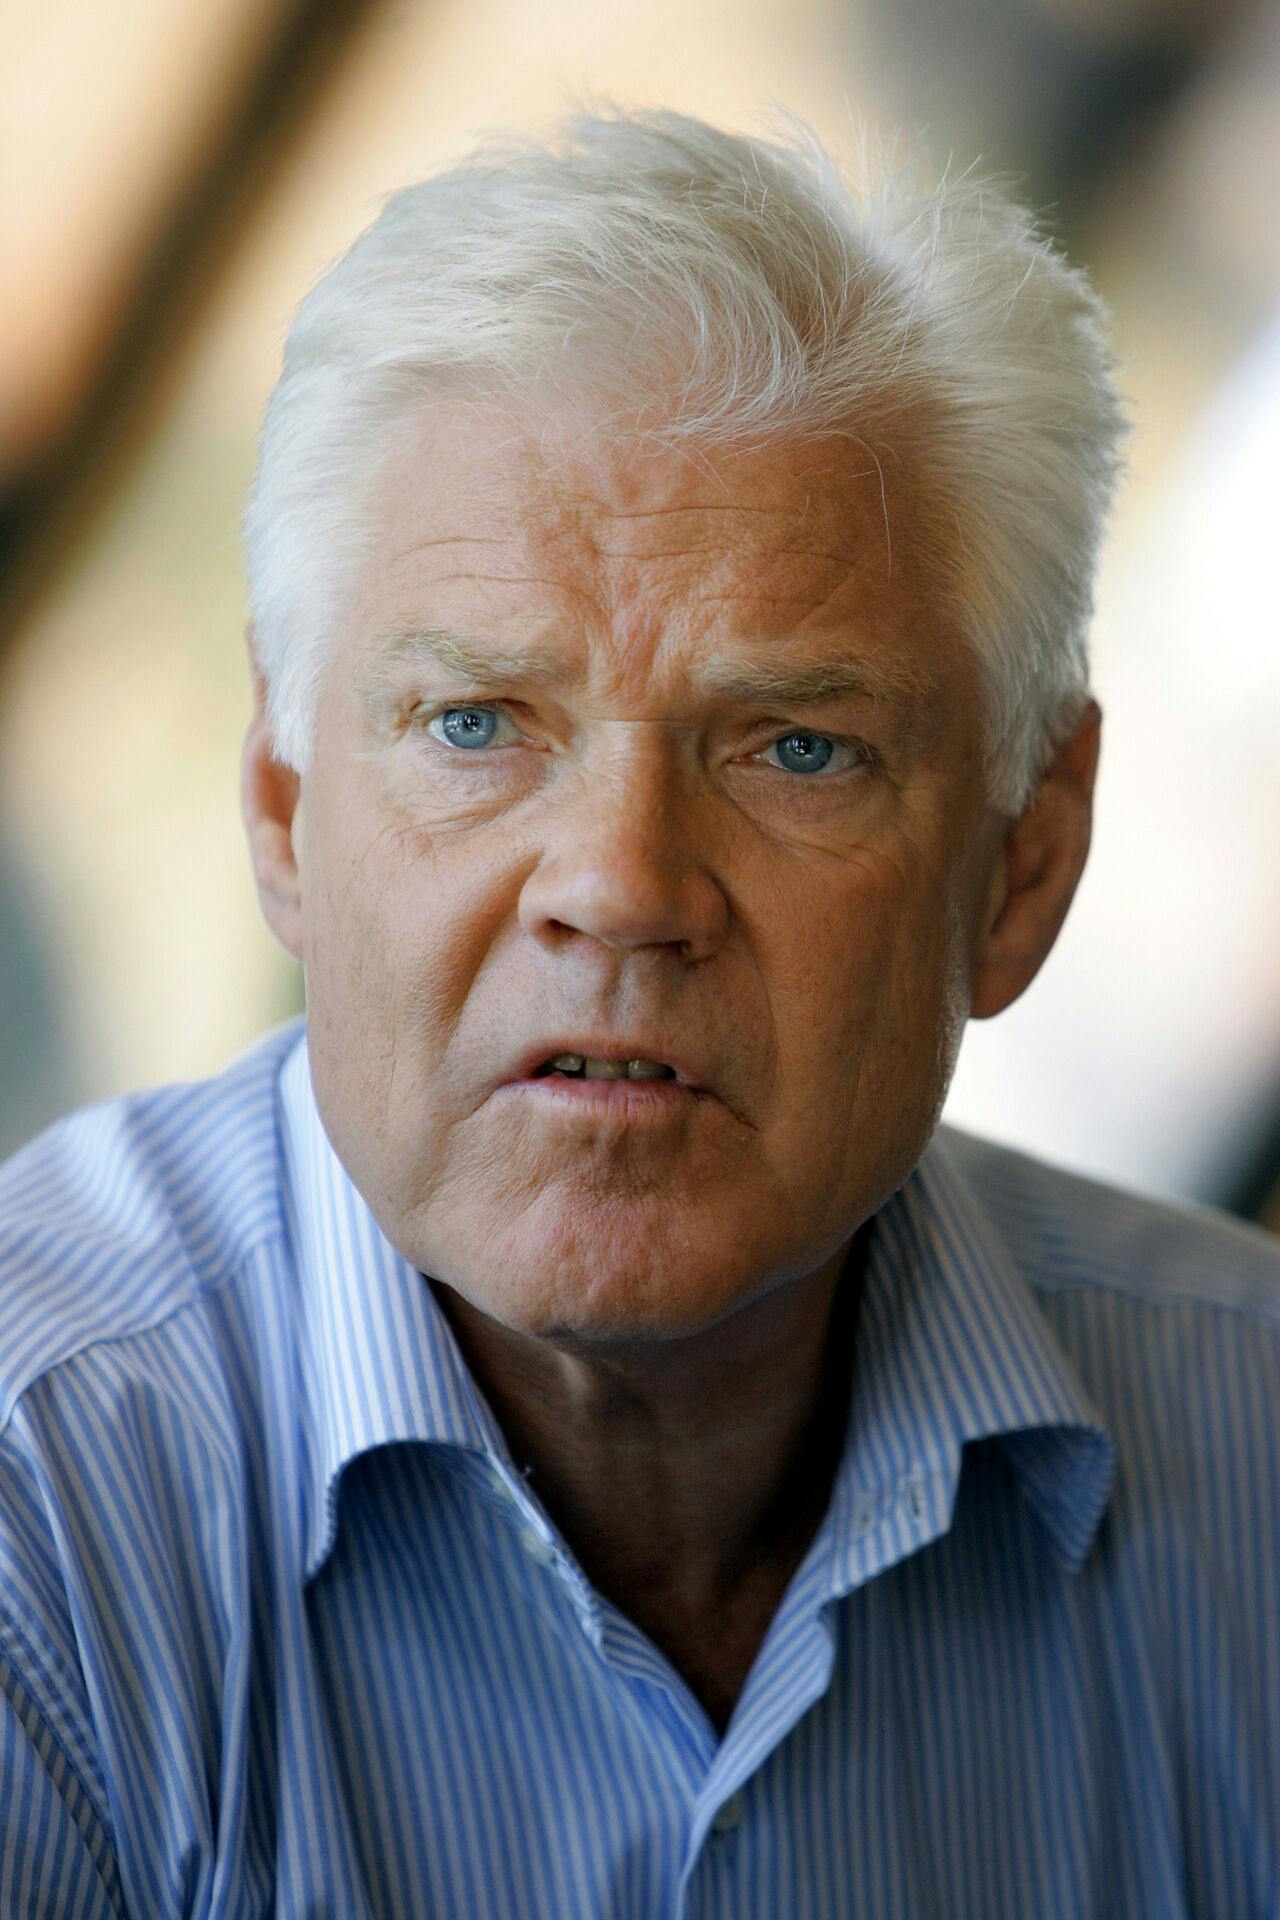 Arne treholt er død. Han tidligere norske politiker blev 80 år.